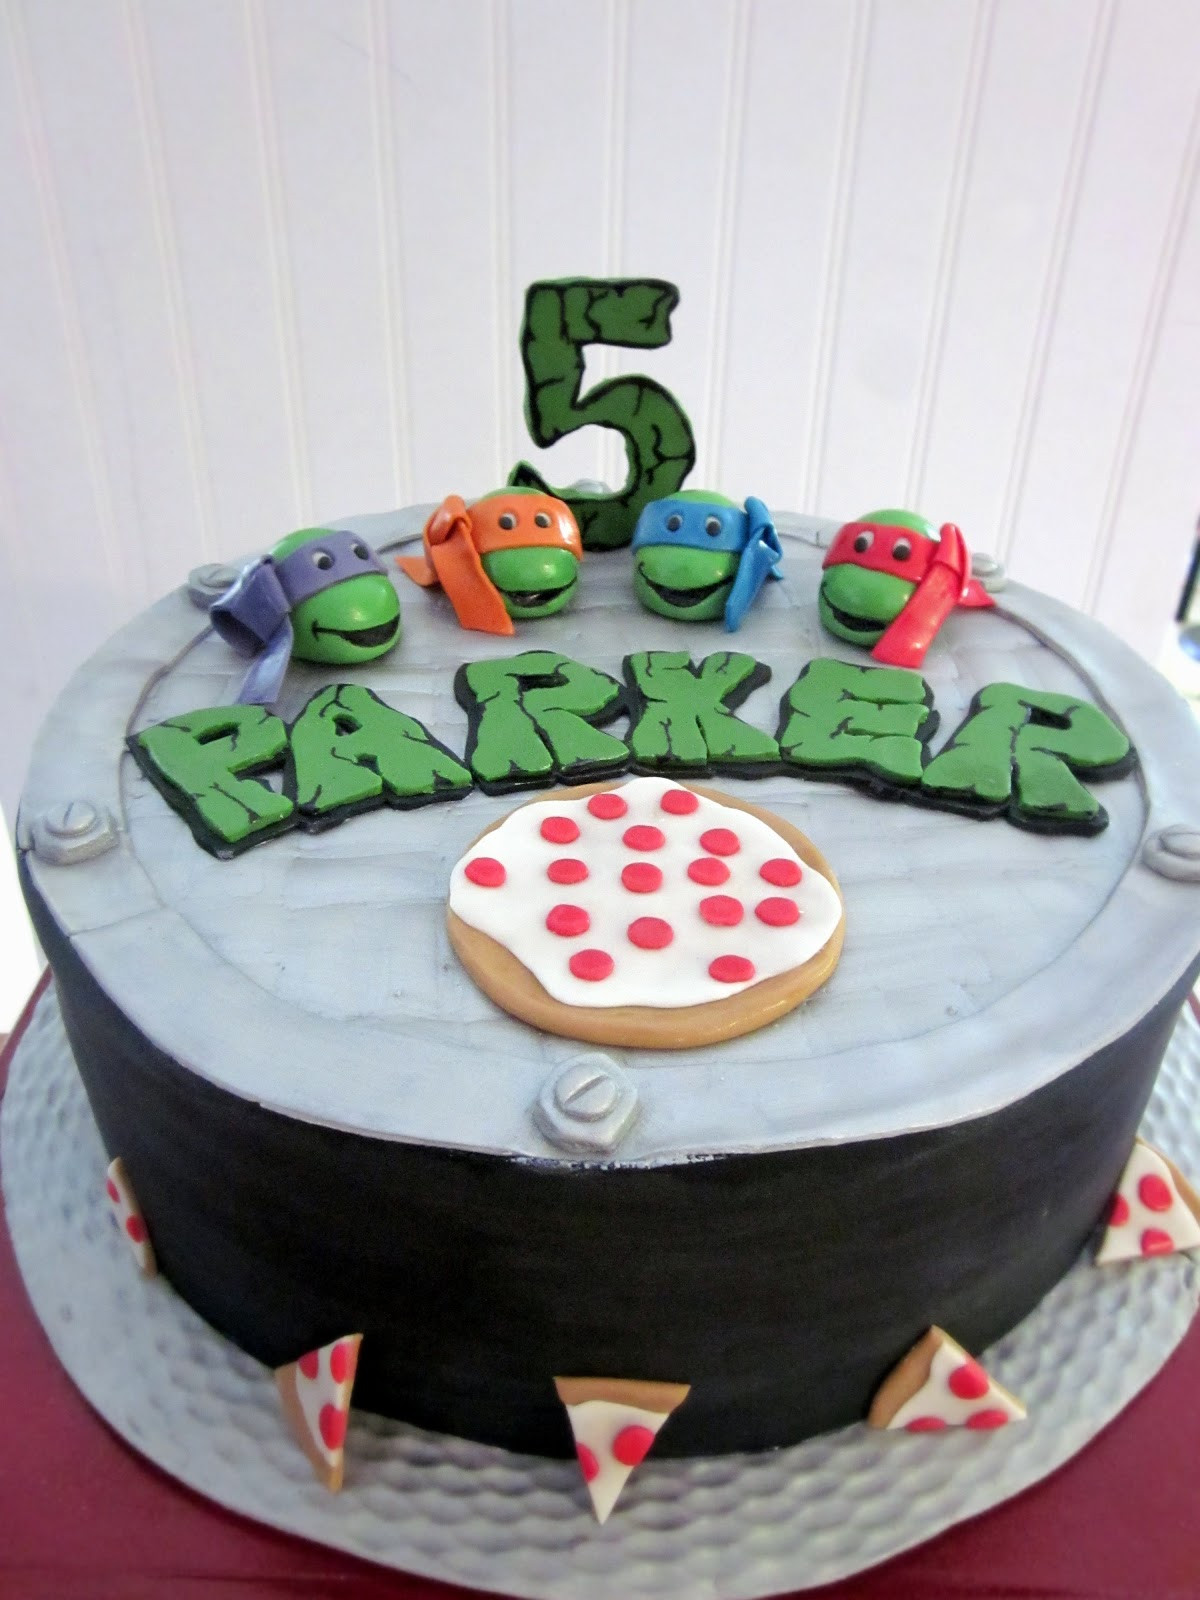 Teenage Mutant Ninja Turtles Birthday Cakes
 Darlin Designs Teenage Mutant Ninja Turtle Birthday Cake